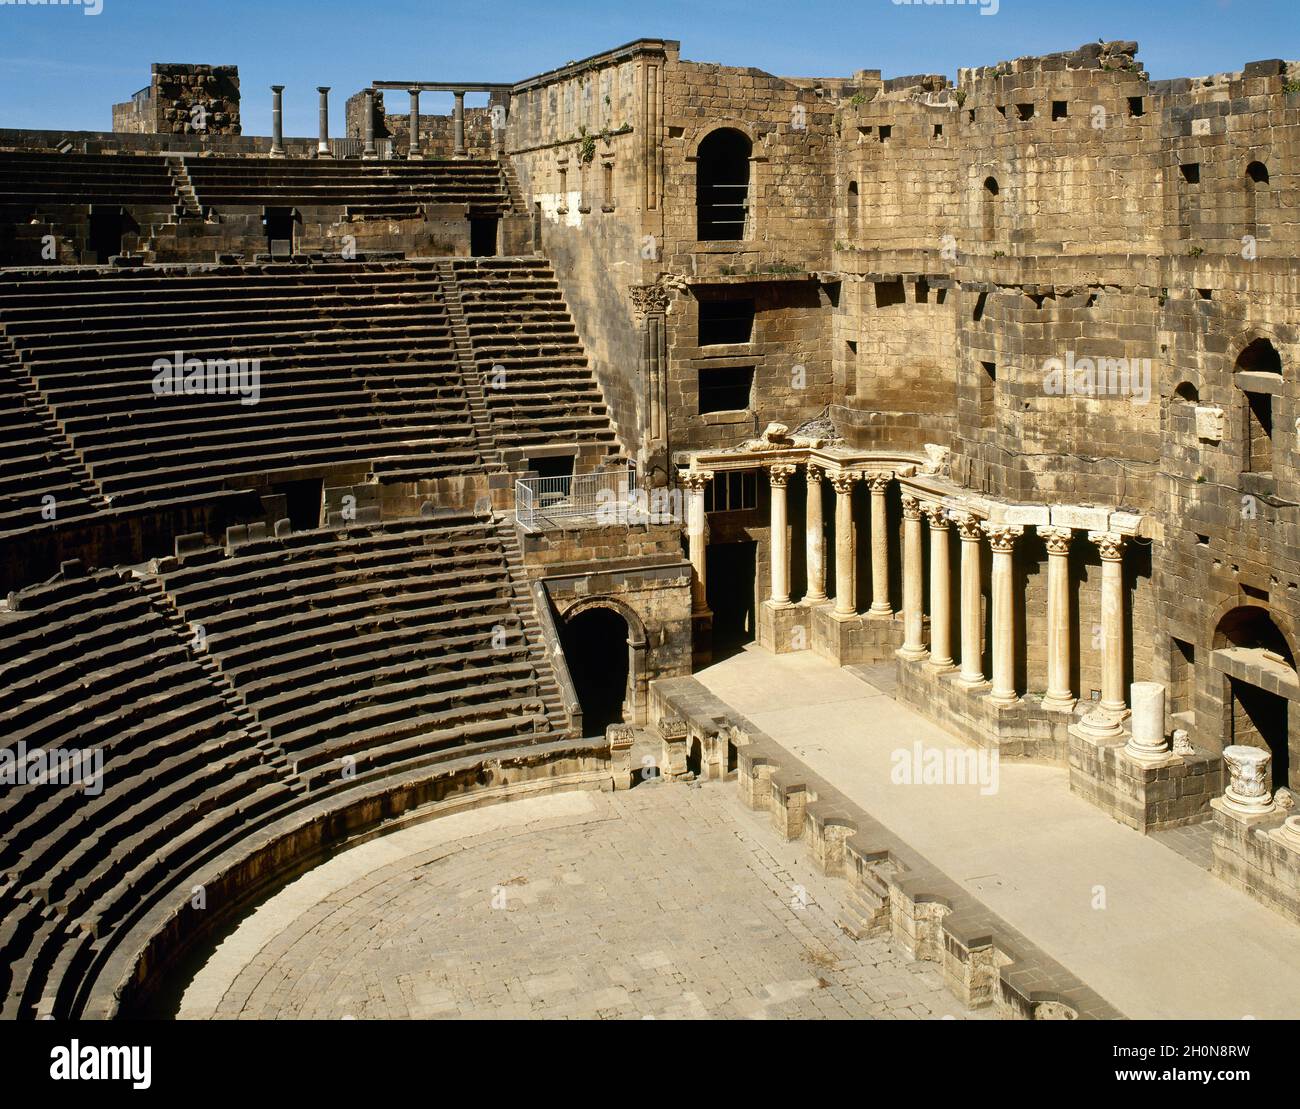 Syrien. Bosra. Römisches Theater. Es wurde aus schwarzem Basalt gebaut. 2. Jahrhundert n. Chr., während der Herrschaft von Trajan. Foto vor der syrischen Zivilwa Stockfoto